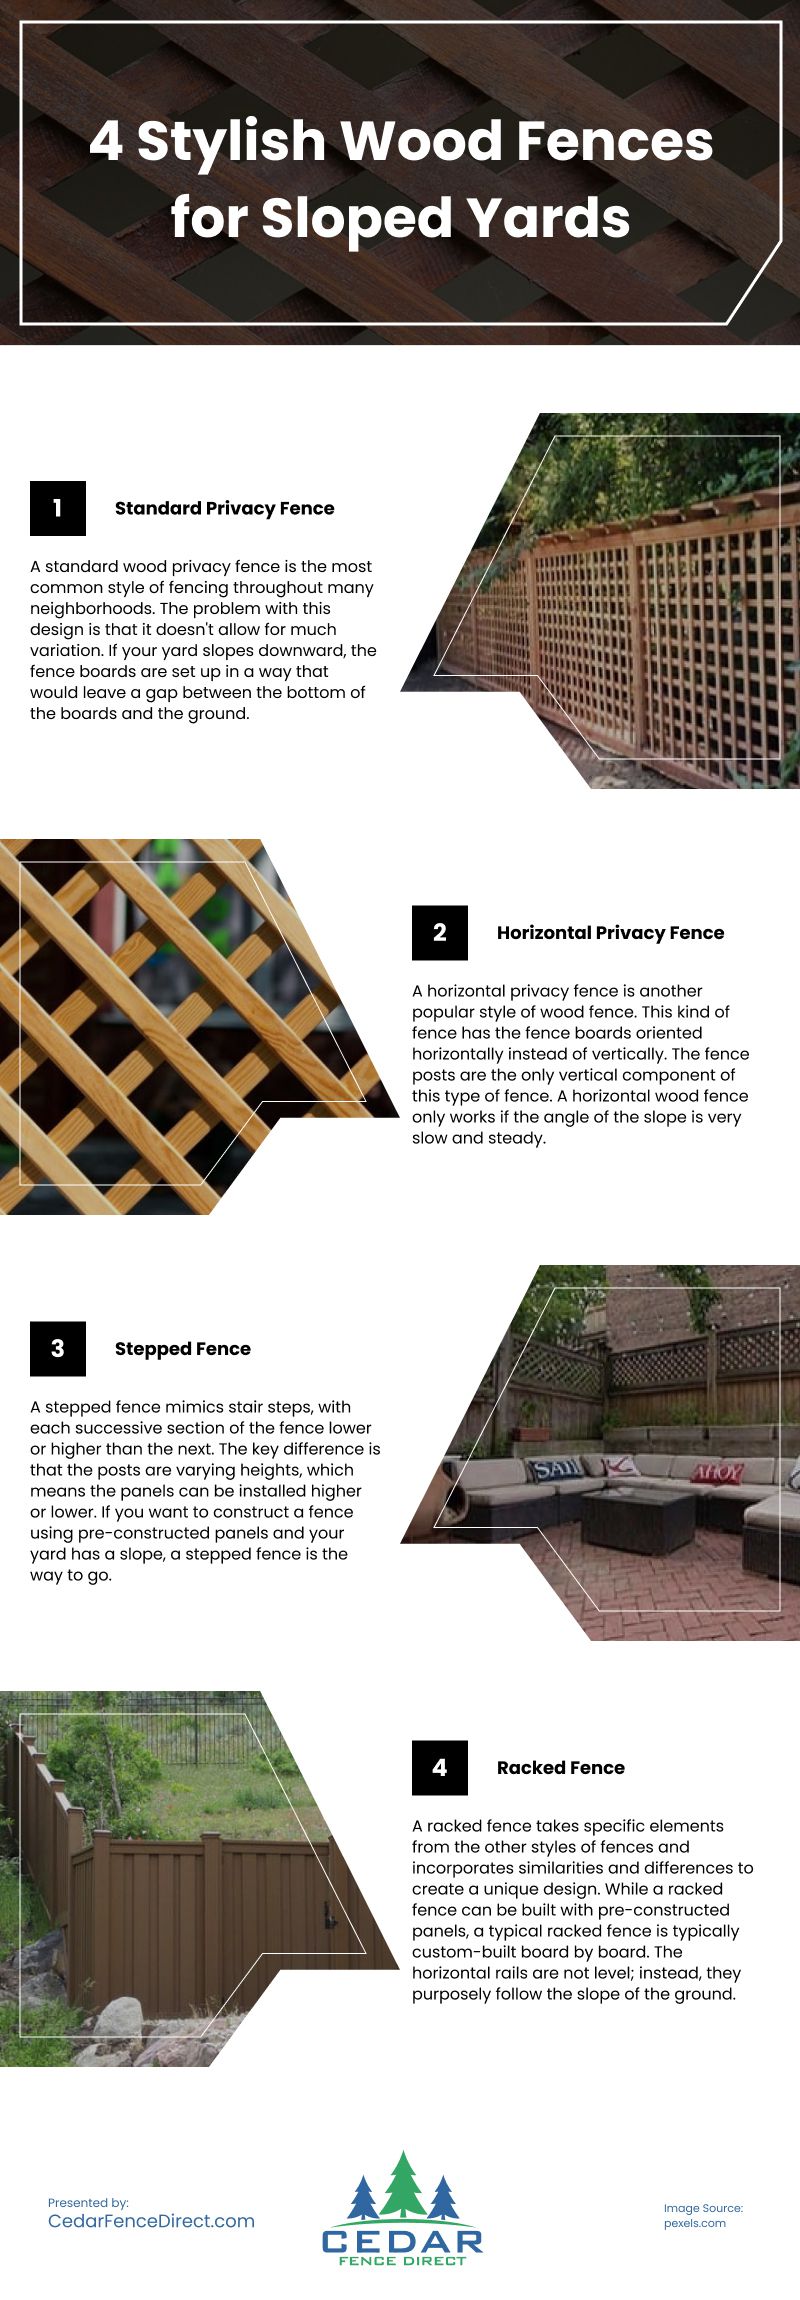 4 Stylish Wood Fences for Sloped Yards Infographic